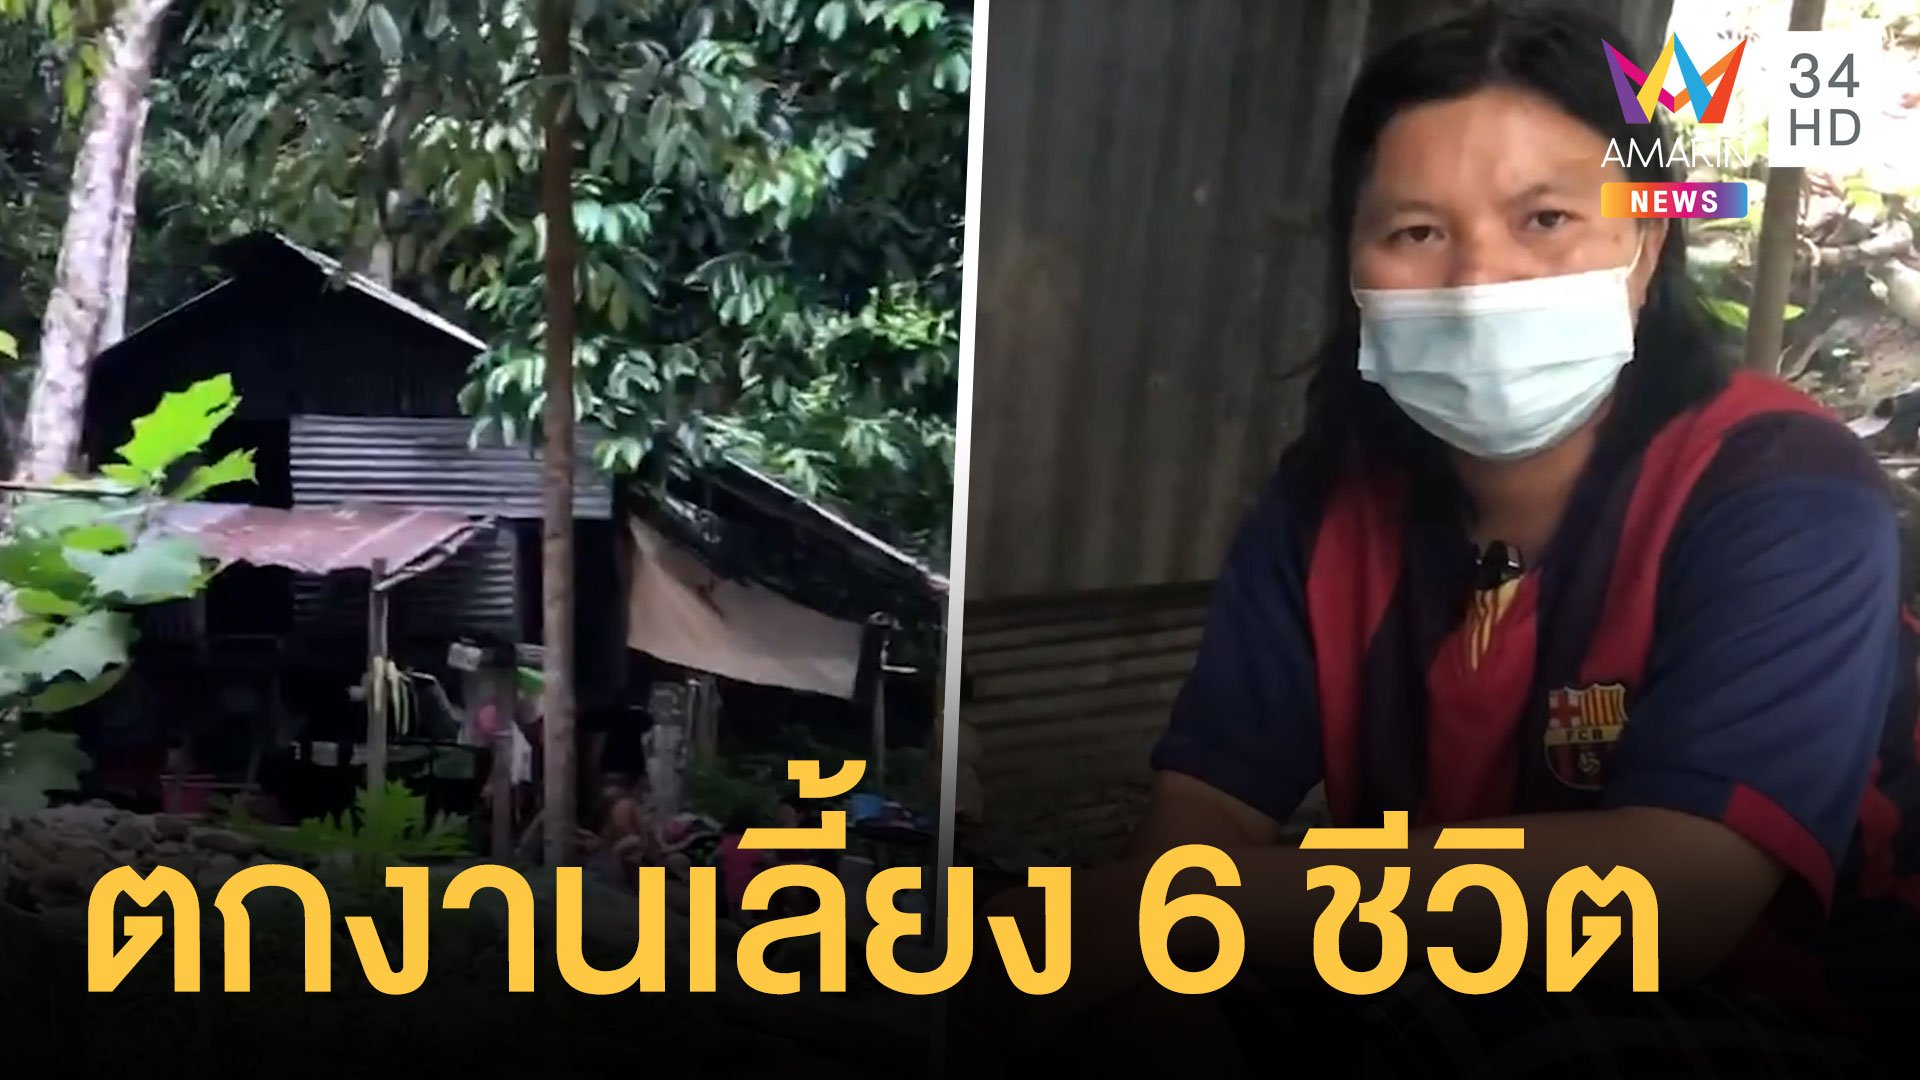 สาวตกงานเลี้ยงดู 6 ชีวิตไม่มีไฟฟ้า ปลูกเพลิงไร้ฝาบ้าน | ข่าวอรุณอมรินทร์ | 23 พ.ค. 64 | AMARIN TVHD34